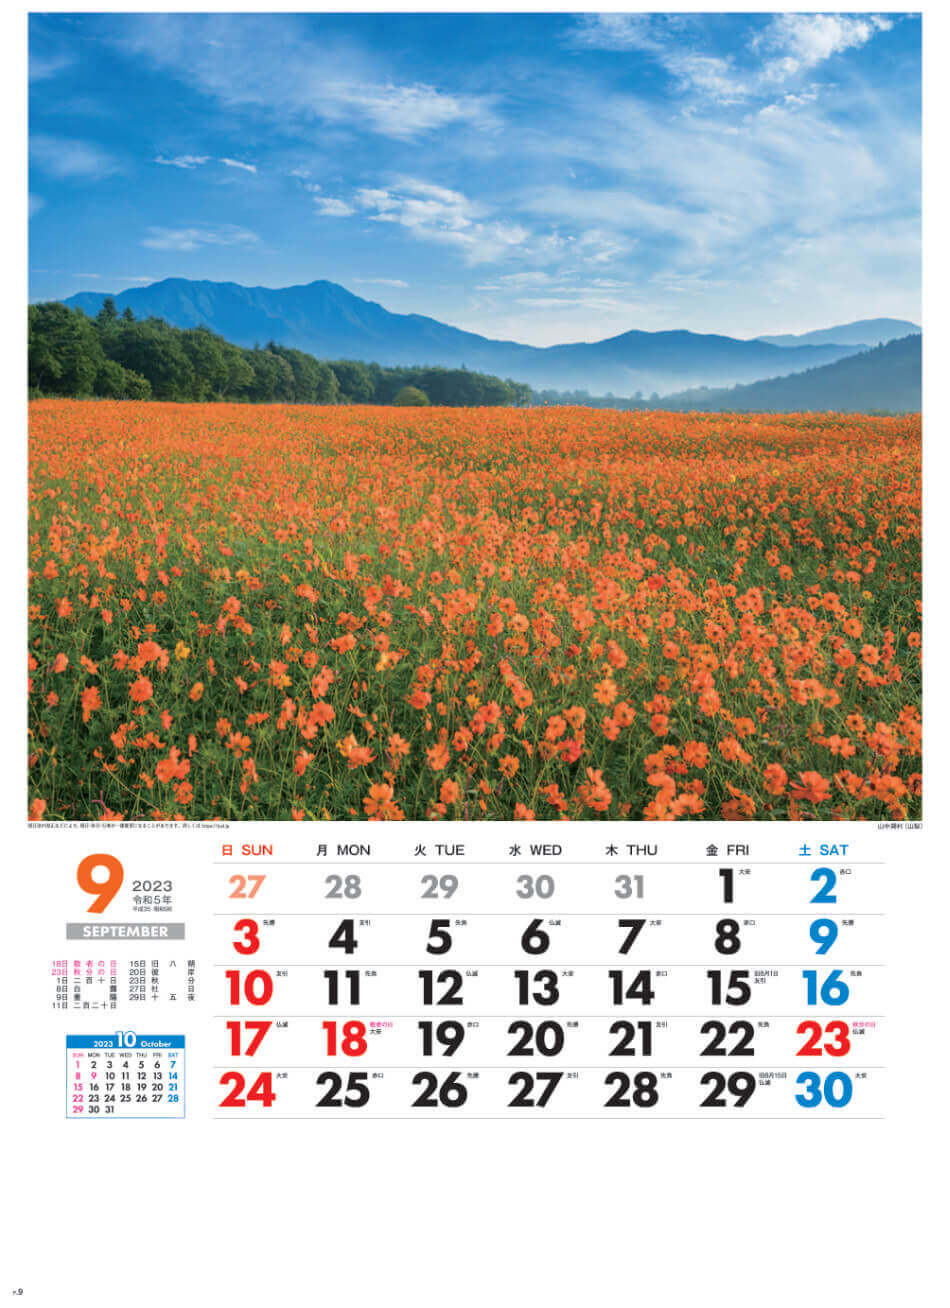 9月 山中湖村(山梨) 美しき日本 2023年カレンダーの画像